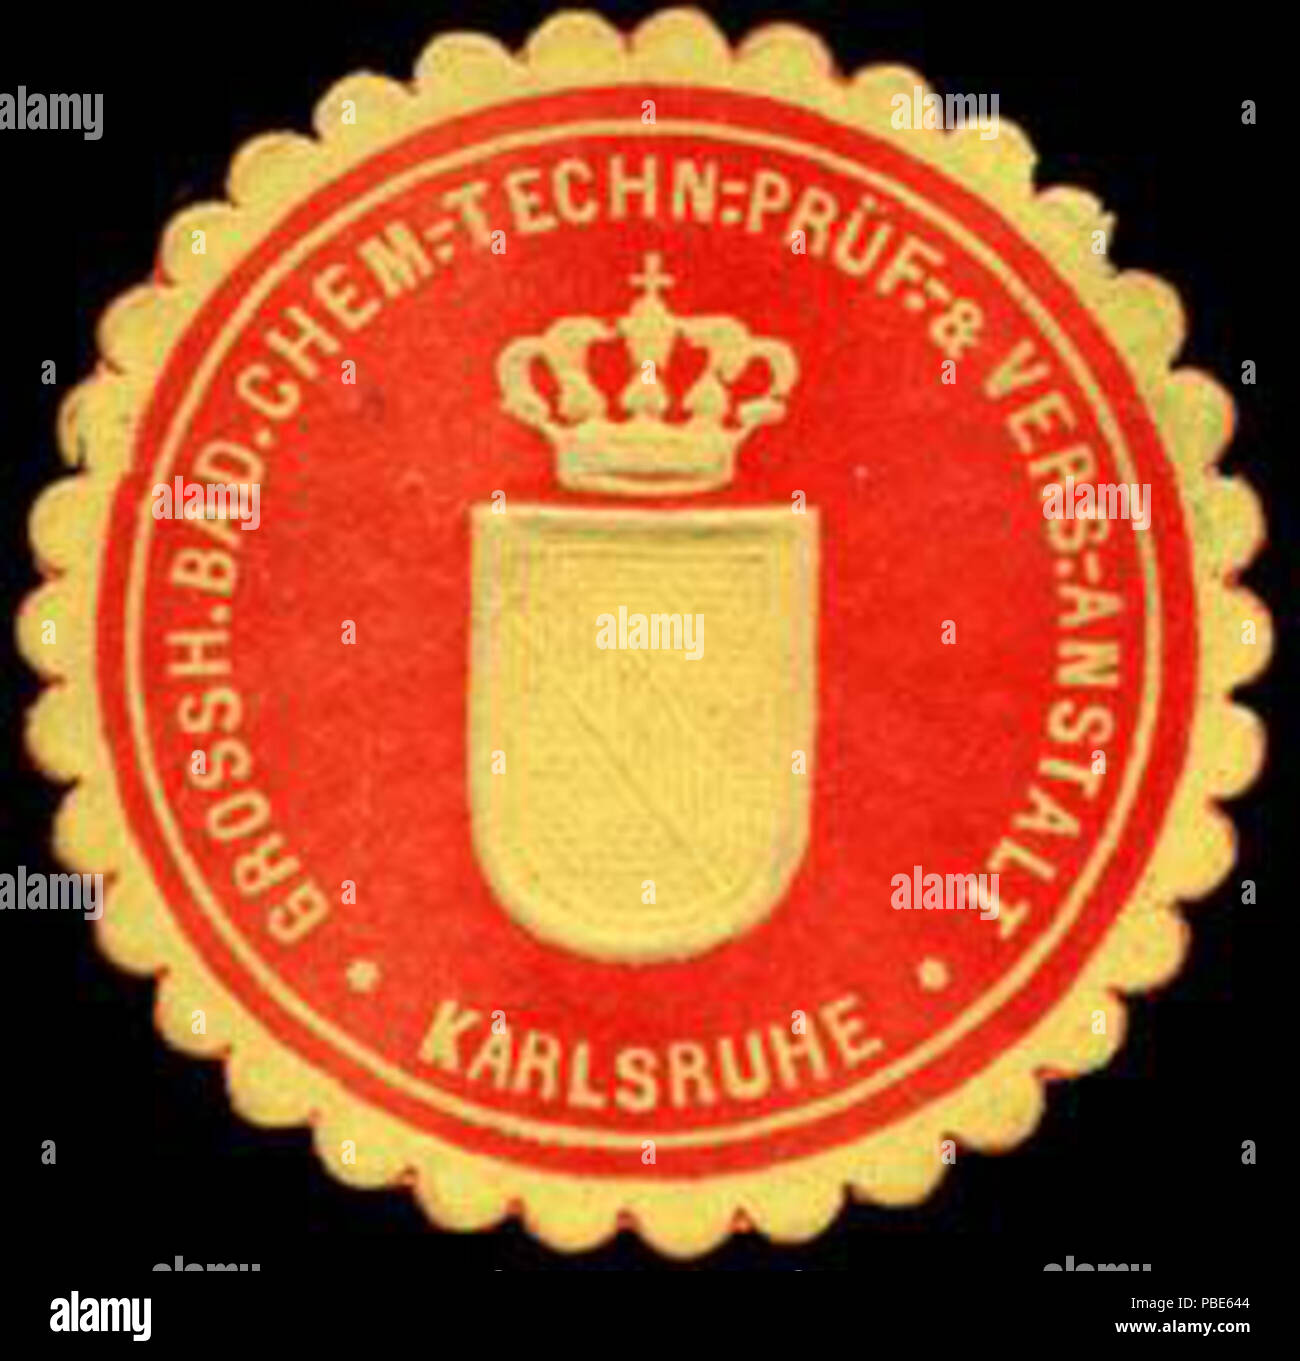 Alte Briefverschlussmarke aus Papier, welche seit ca. 1850 von Behoerden, Anwaelten, Notaren und Firmen zum verschliessen der Post verwendet wurde. 1395 Siegelmarke Grossherzoglich Badische Chemisch - Technische - Prüf - &AMP; Versuchs - Anstalt - Karlsruhe W0227220 Foto Stock